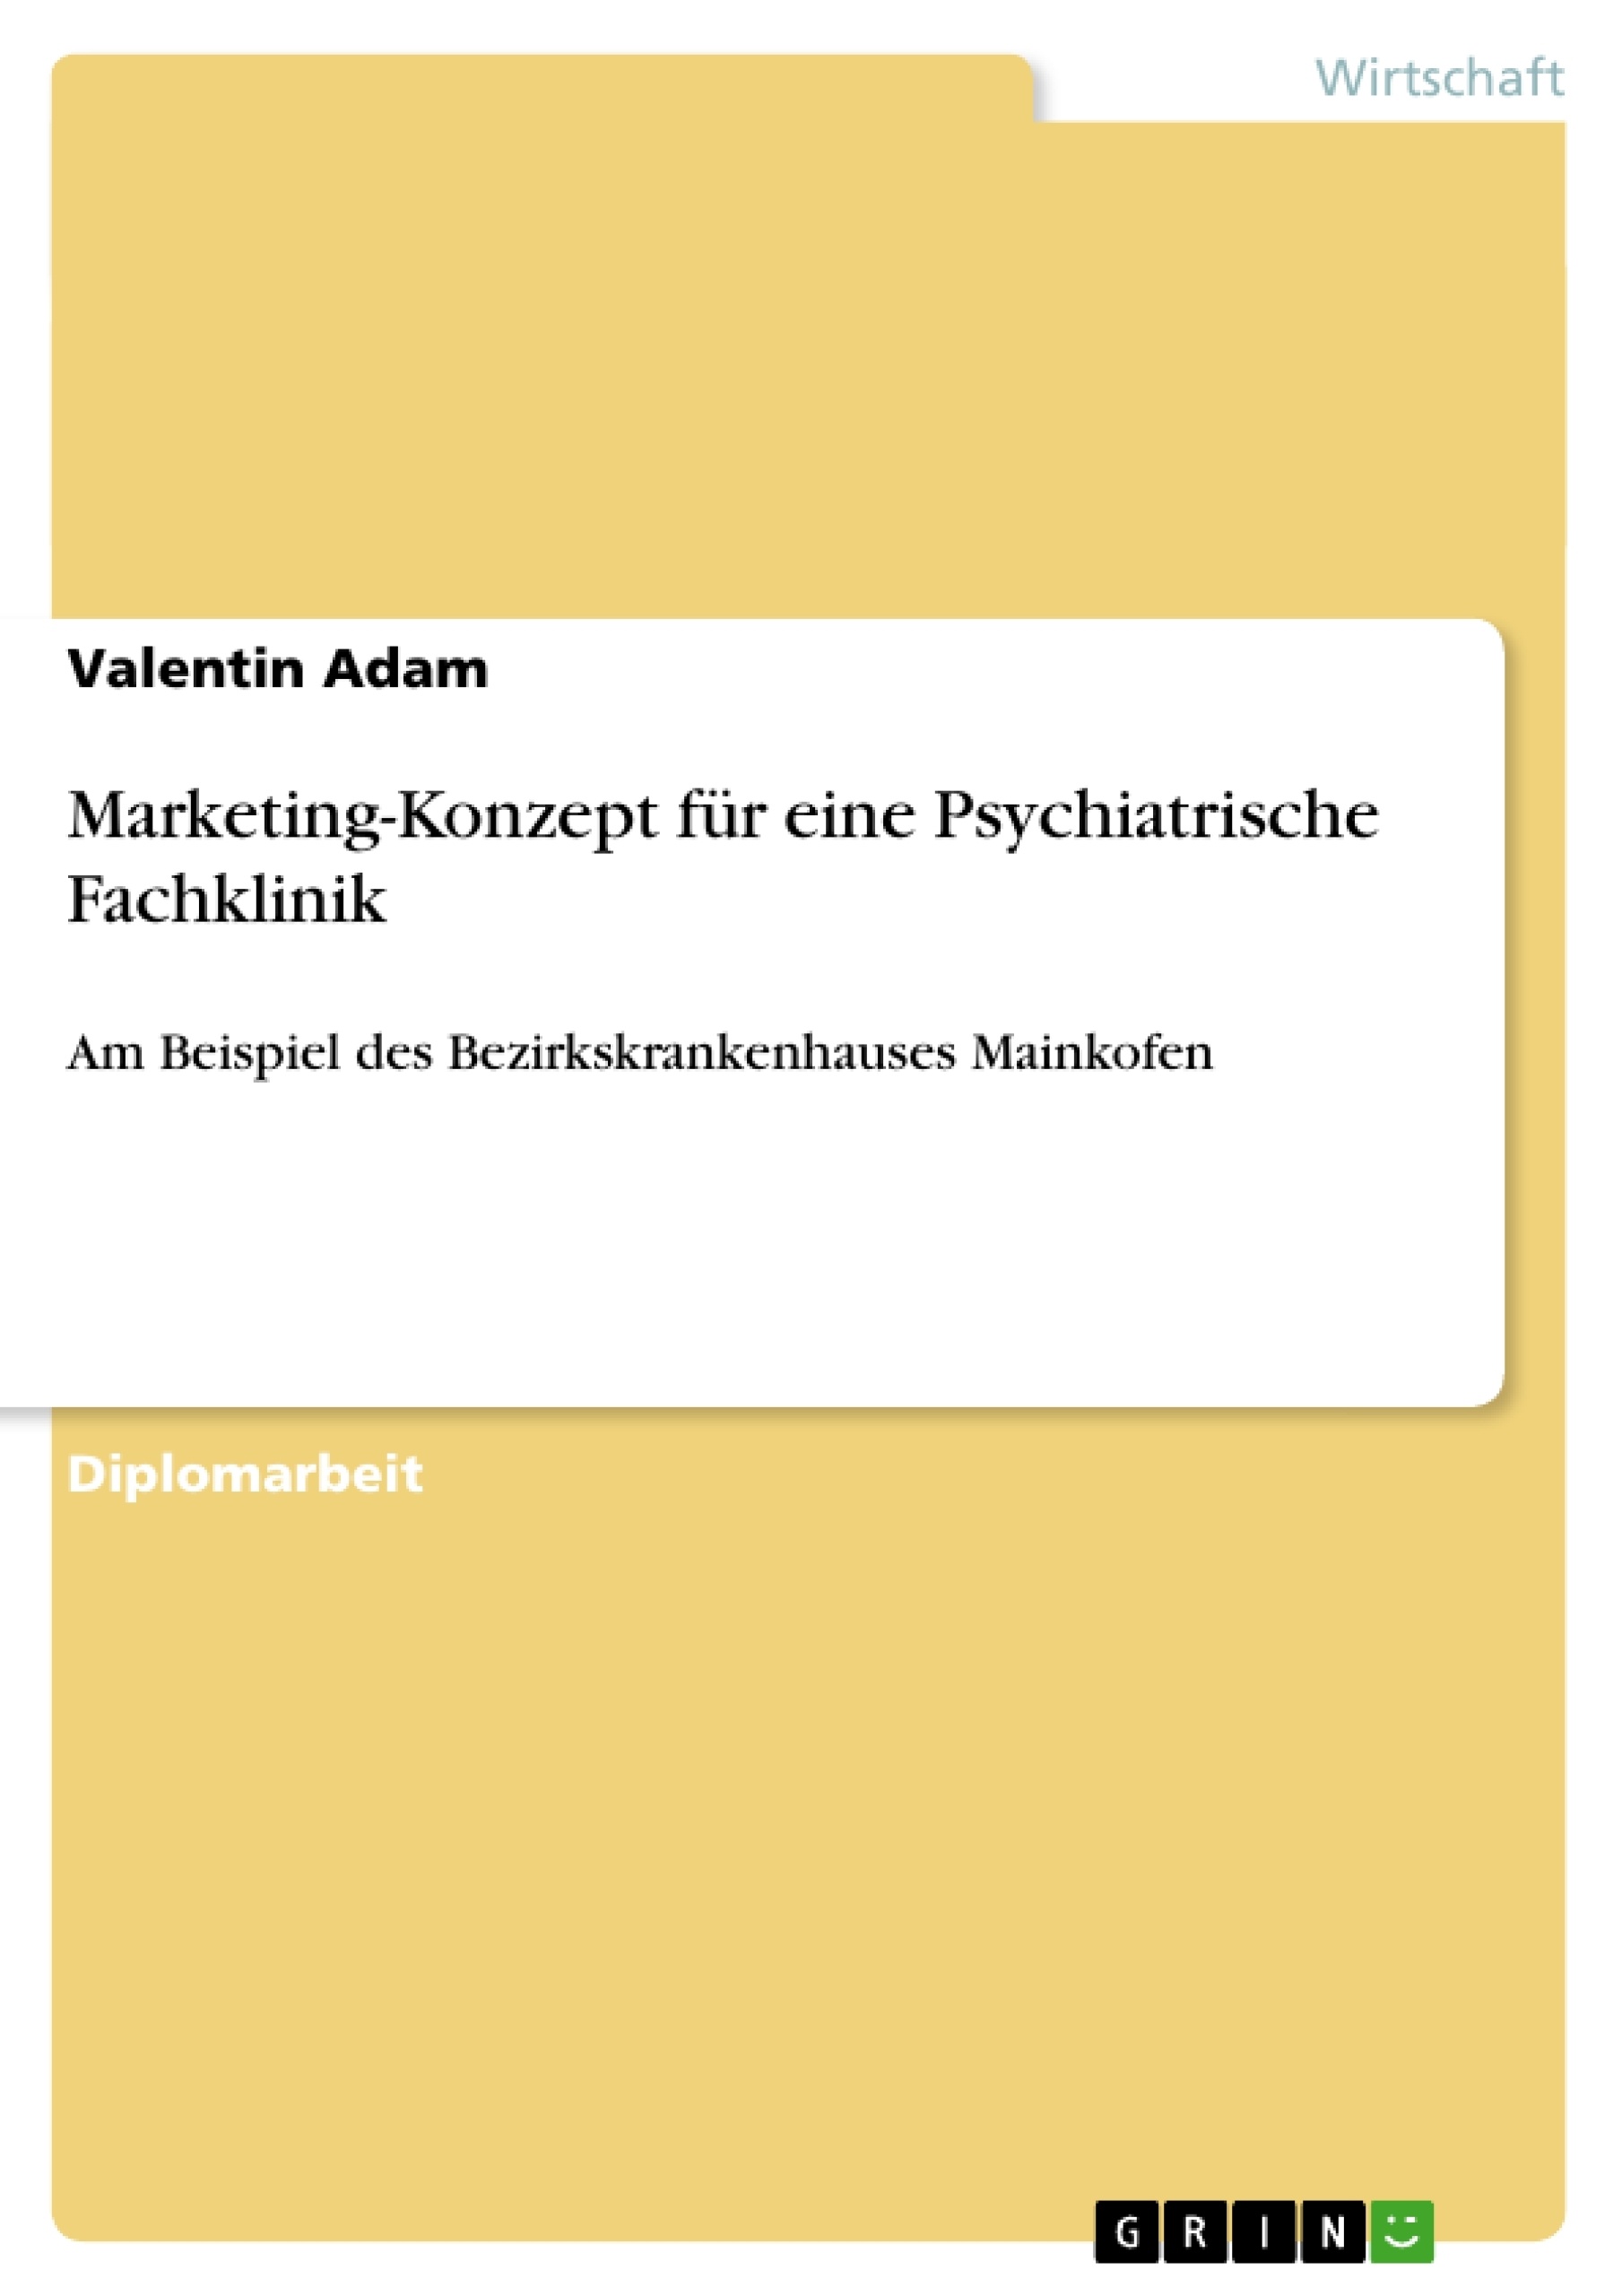 Titre: Marketing-Konzept für eine Psychiatrische Fachklinik